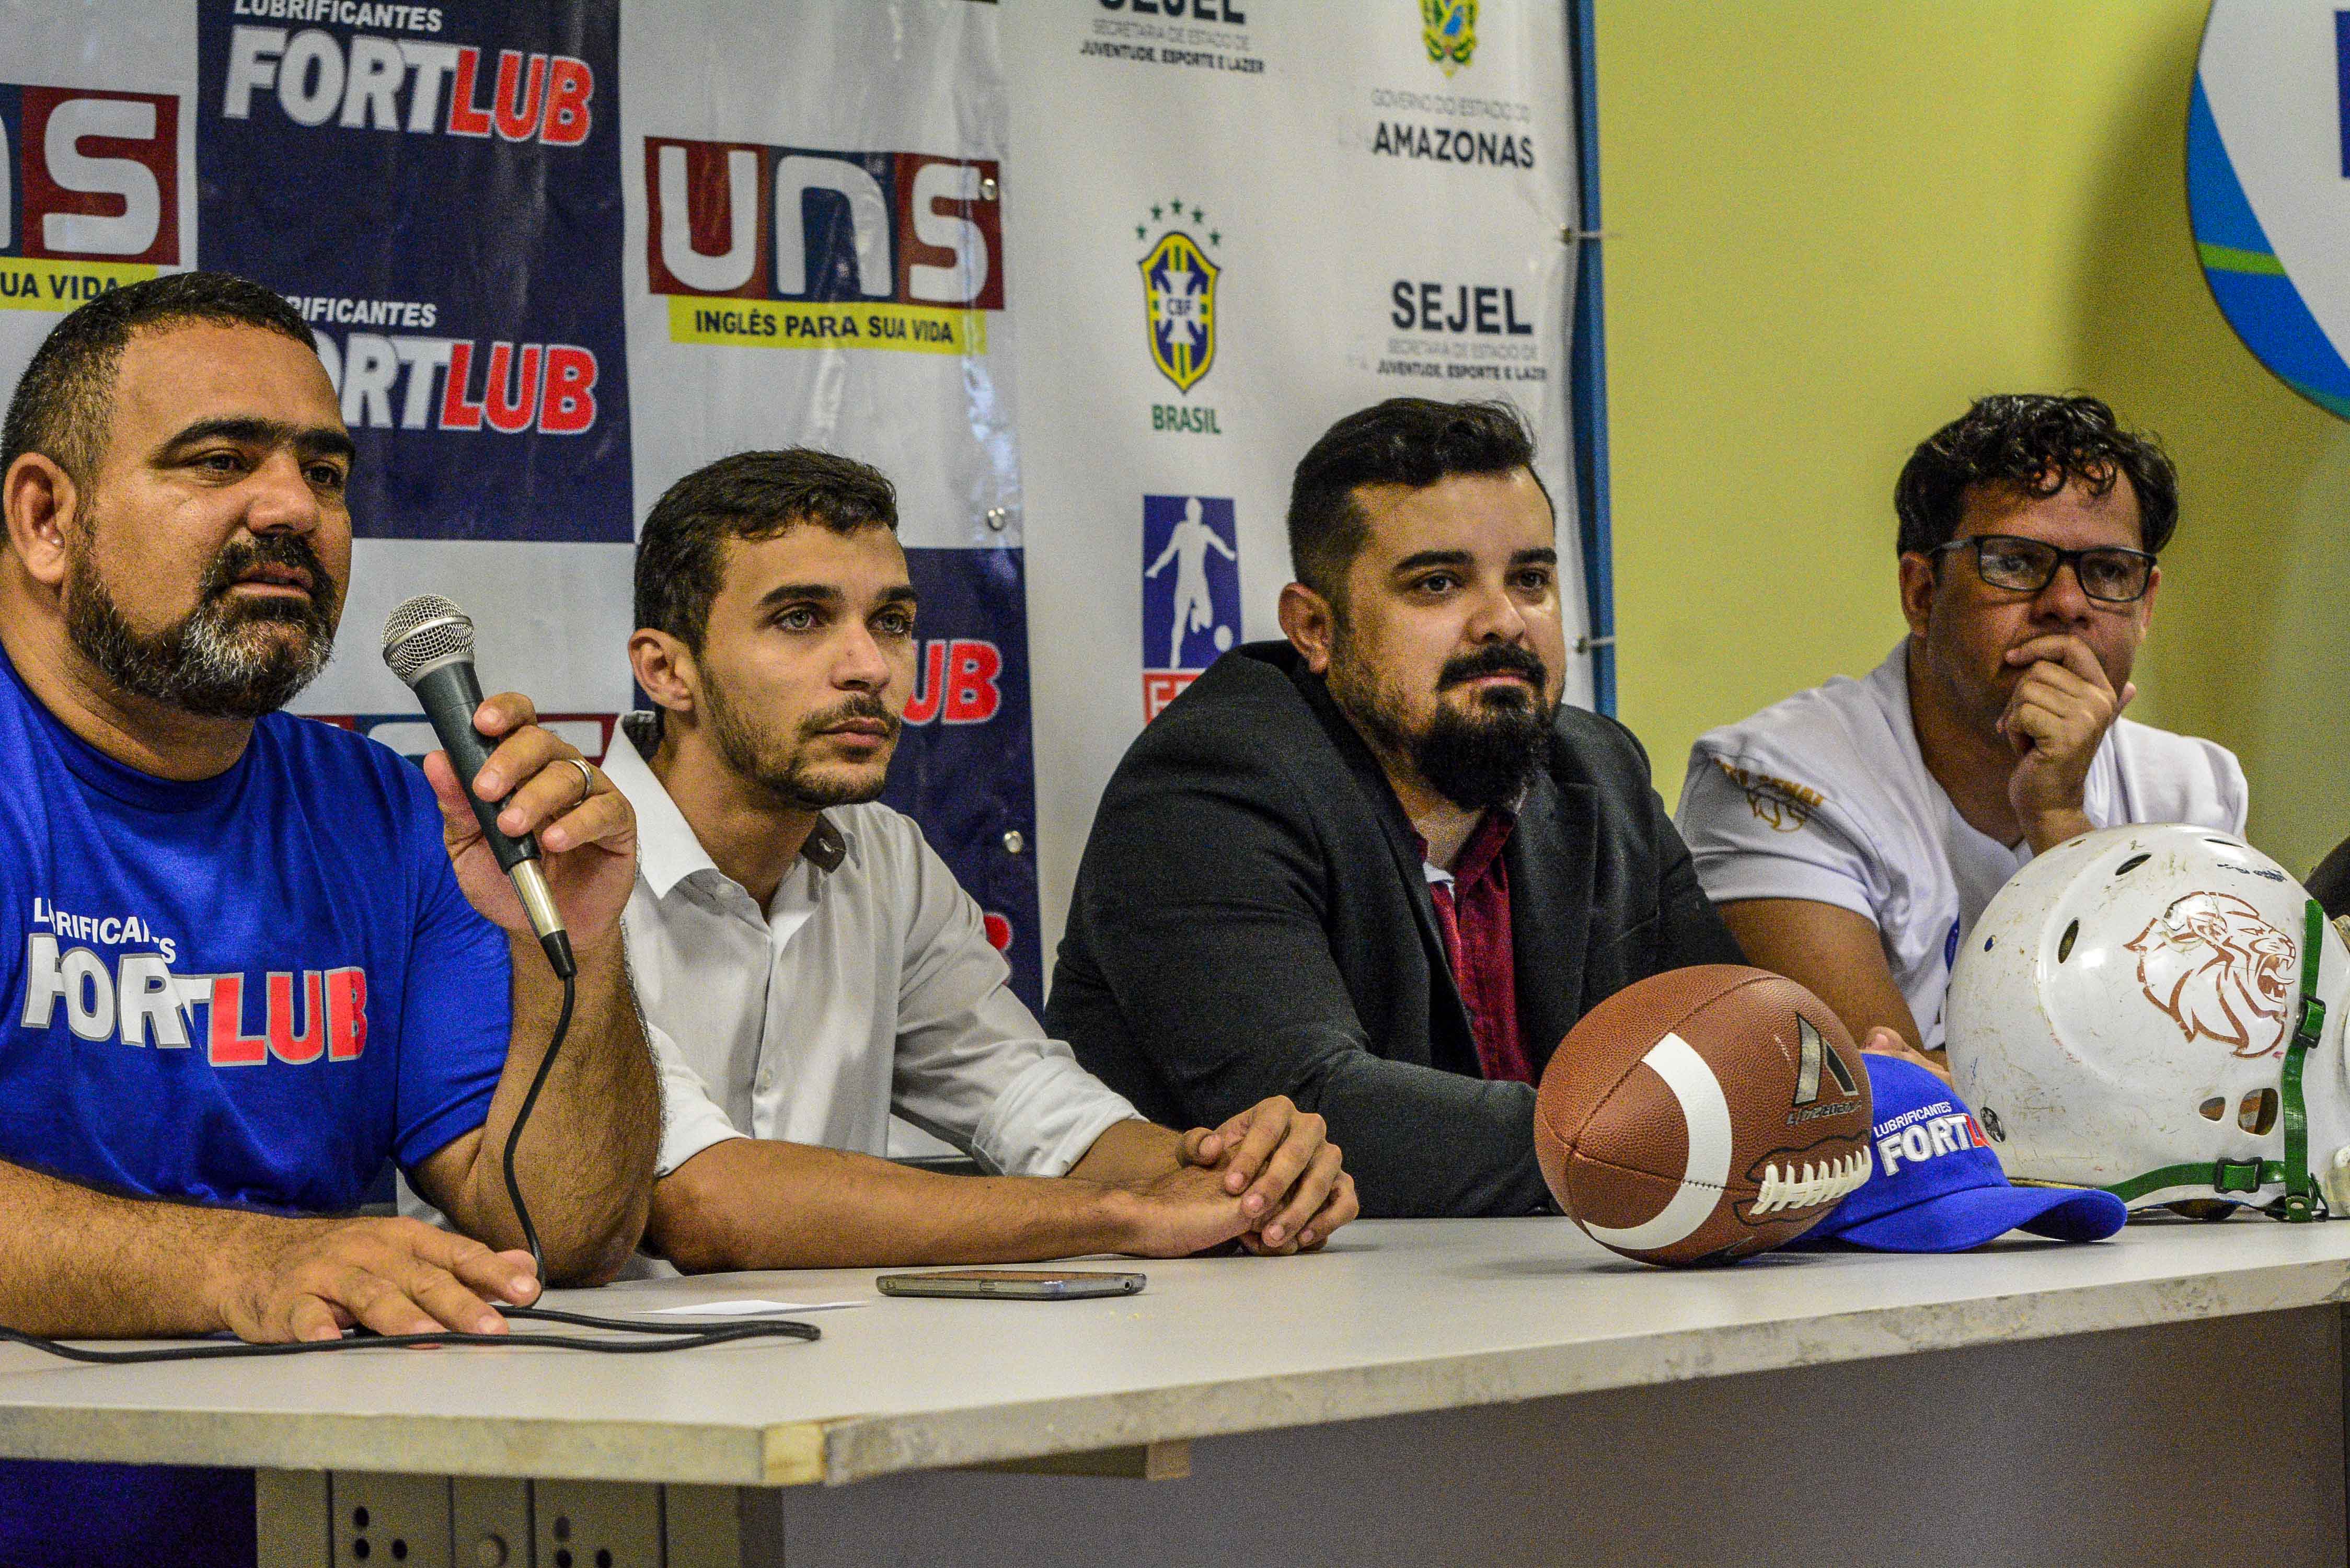 Saiba onde e quando vai ter jogo de futebol americano este ano em Manaus –  Blog do Hiel Levy